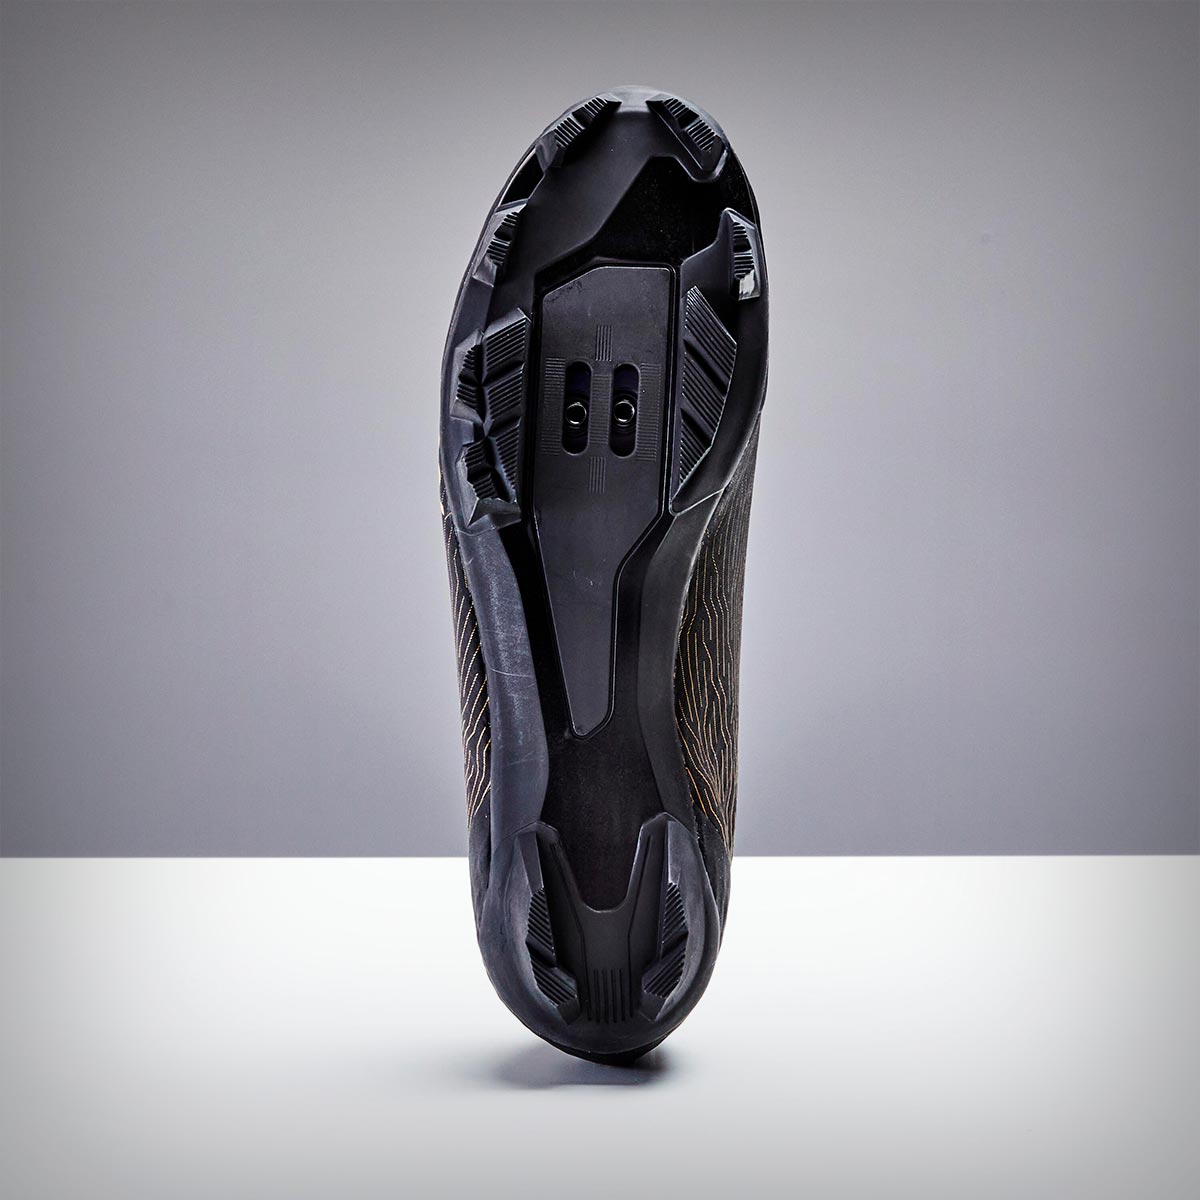 Rockrider Race 900 para XC y Gravel, unas llamativas zapatillas de precio ajustado y características tope de gama